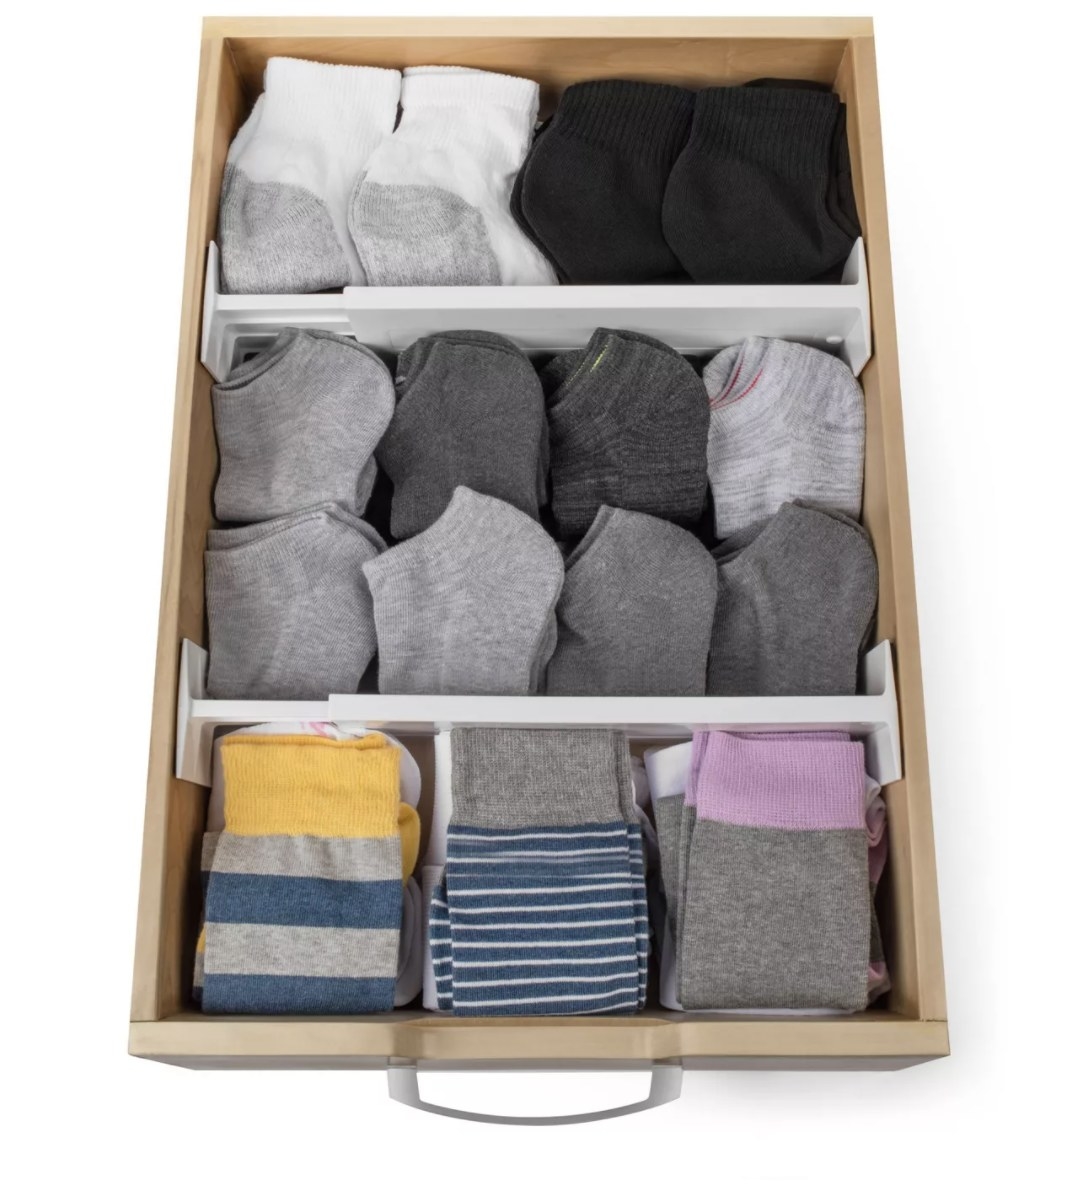 socks in drawer